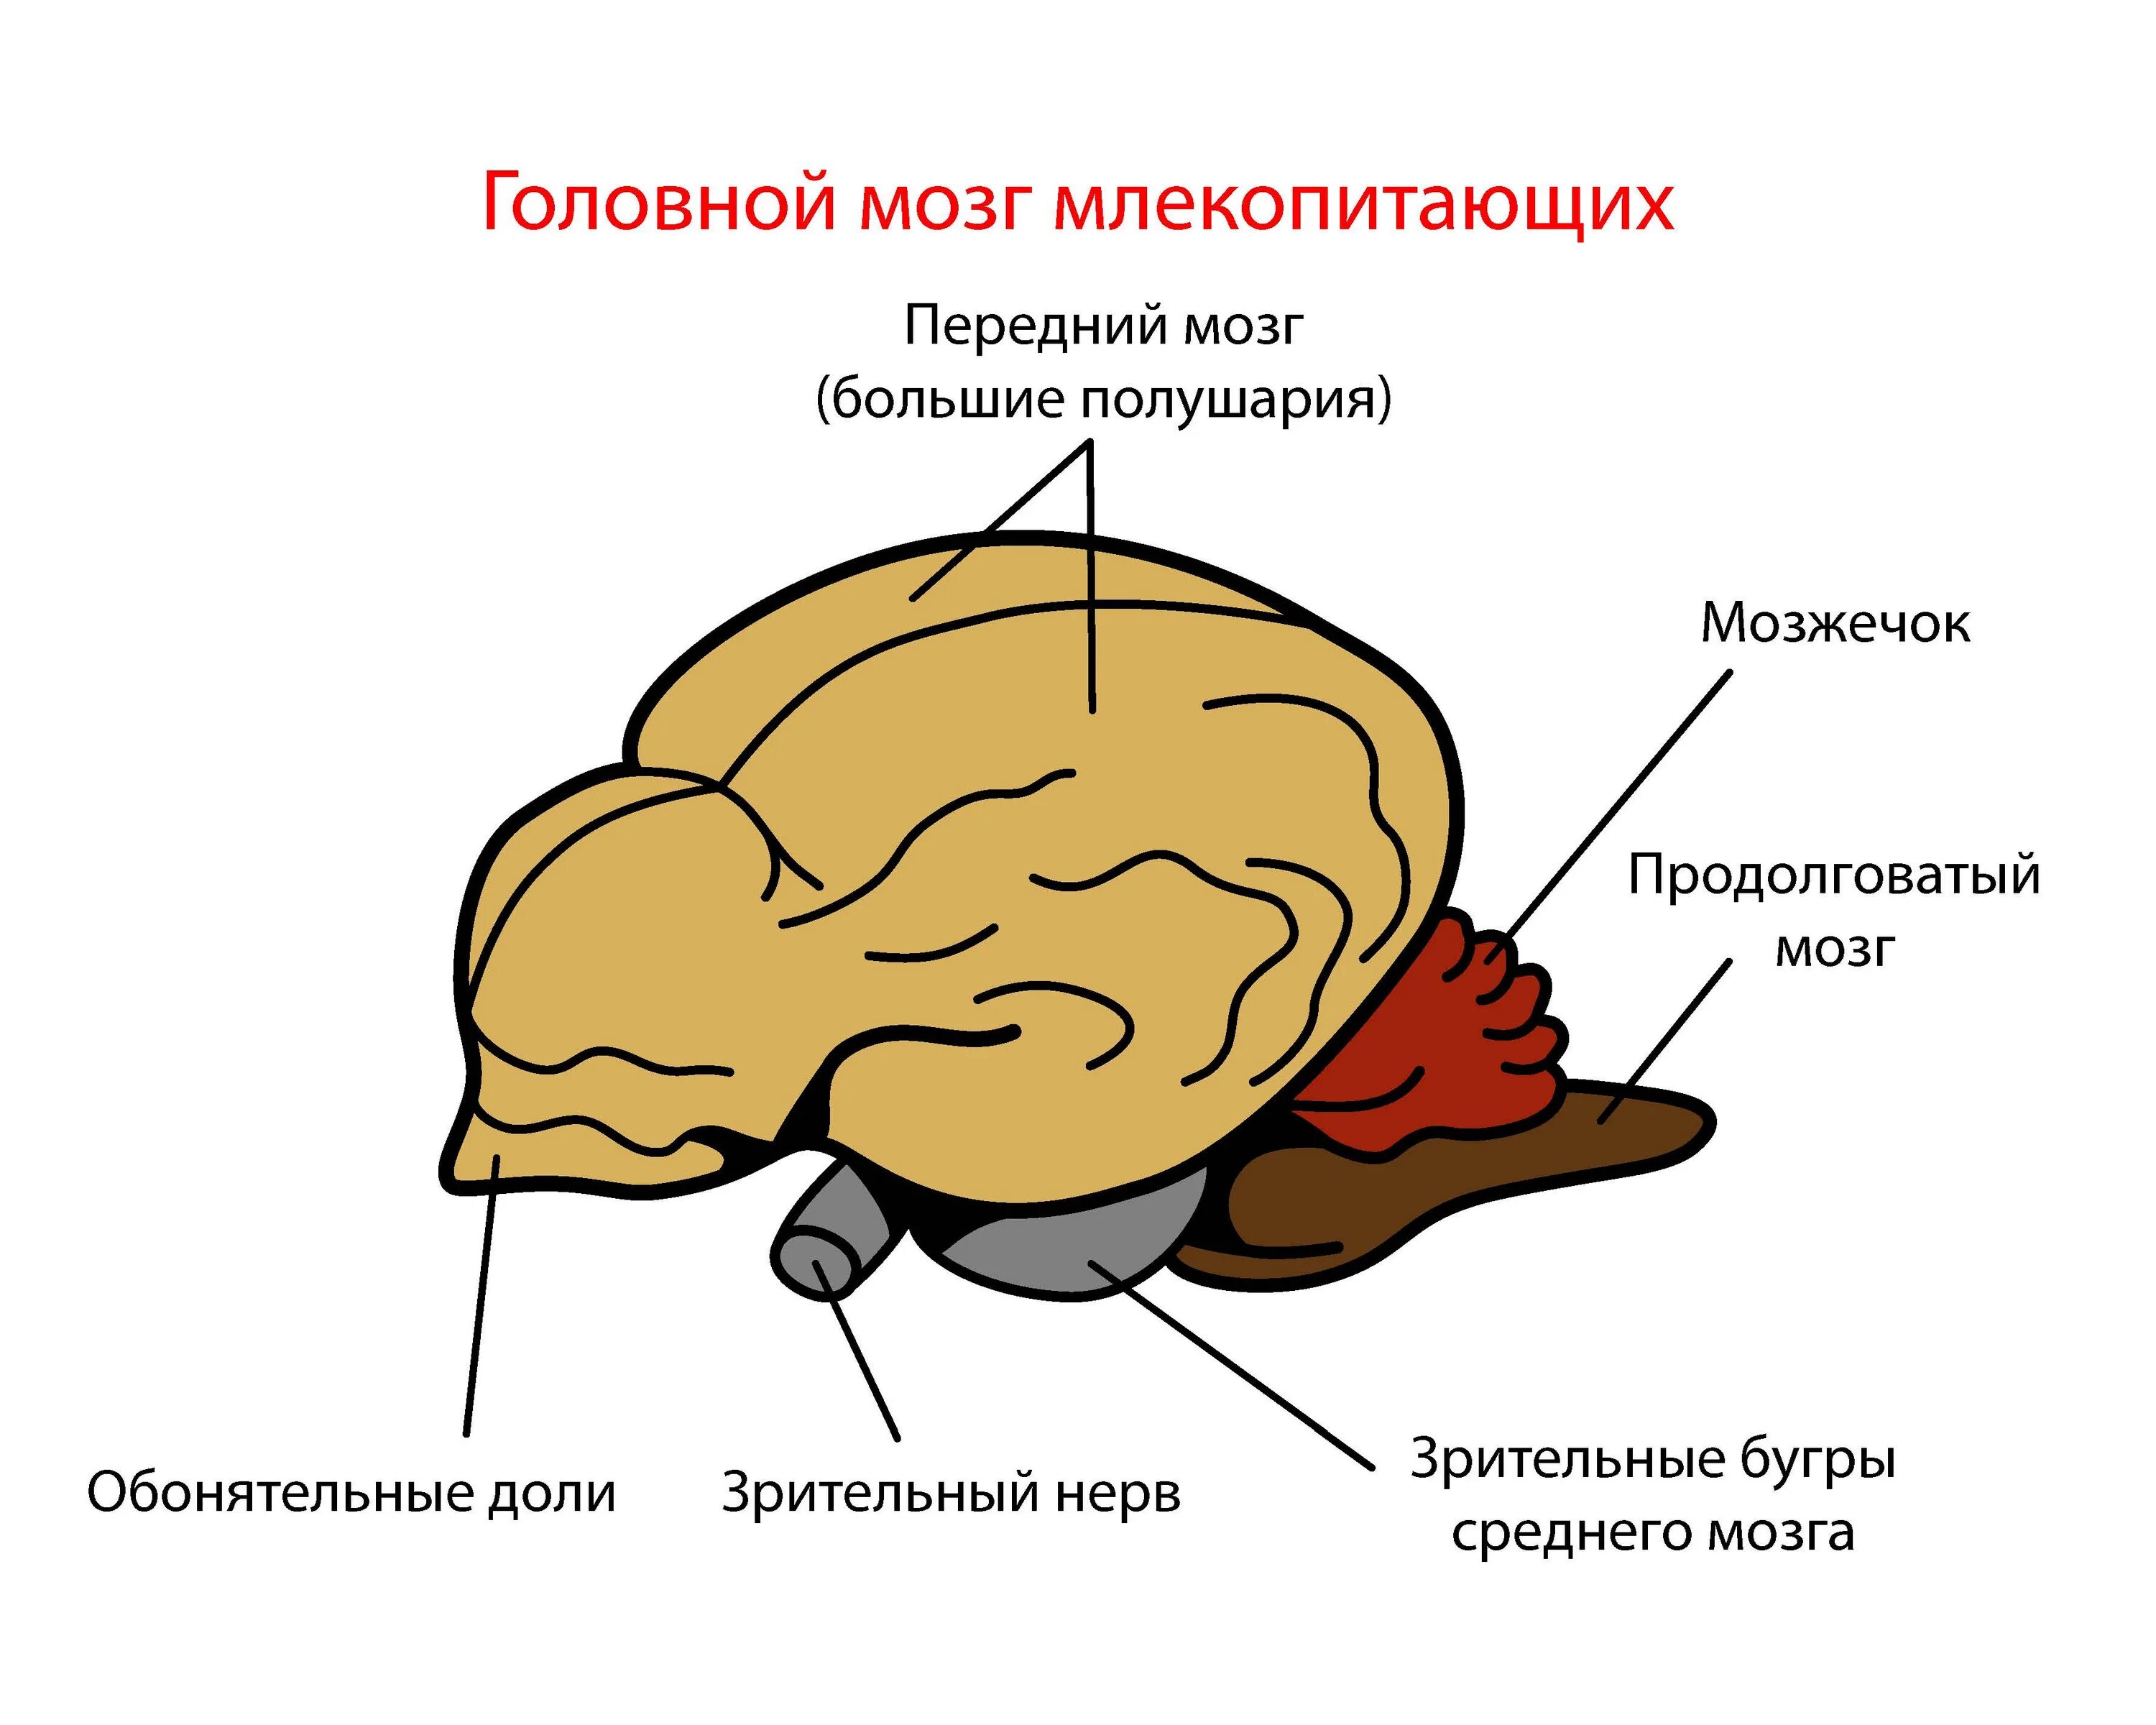 Промежуточный мозг млекопитающих. Головной мозг млекопитающих. Отделы головного мозга млекопитающих. Строение головного мозга млекопитающих. Мозг млекопитающего рисунок.